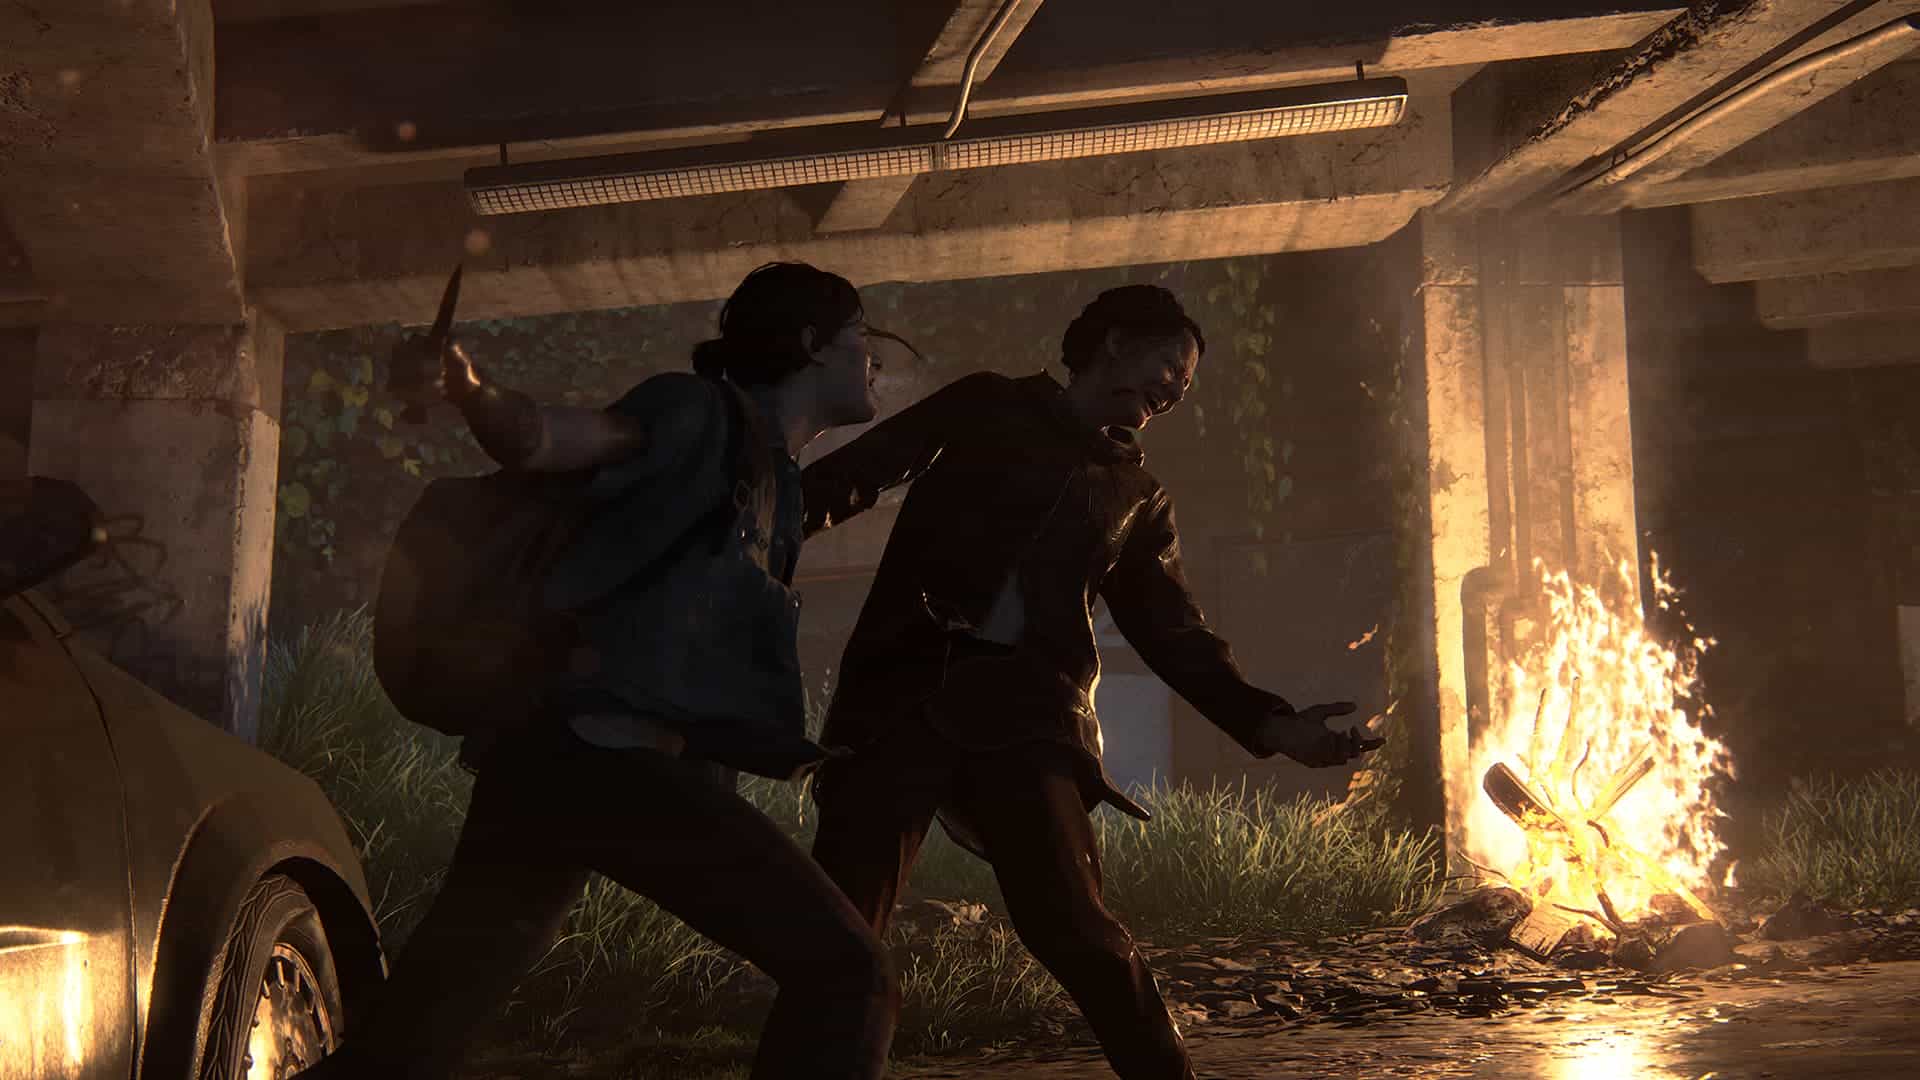  اکانت قانونی The Last of Us Part II برای PS4 & PS5 